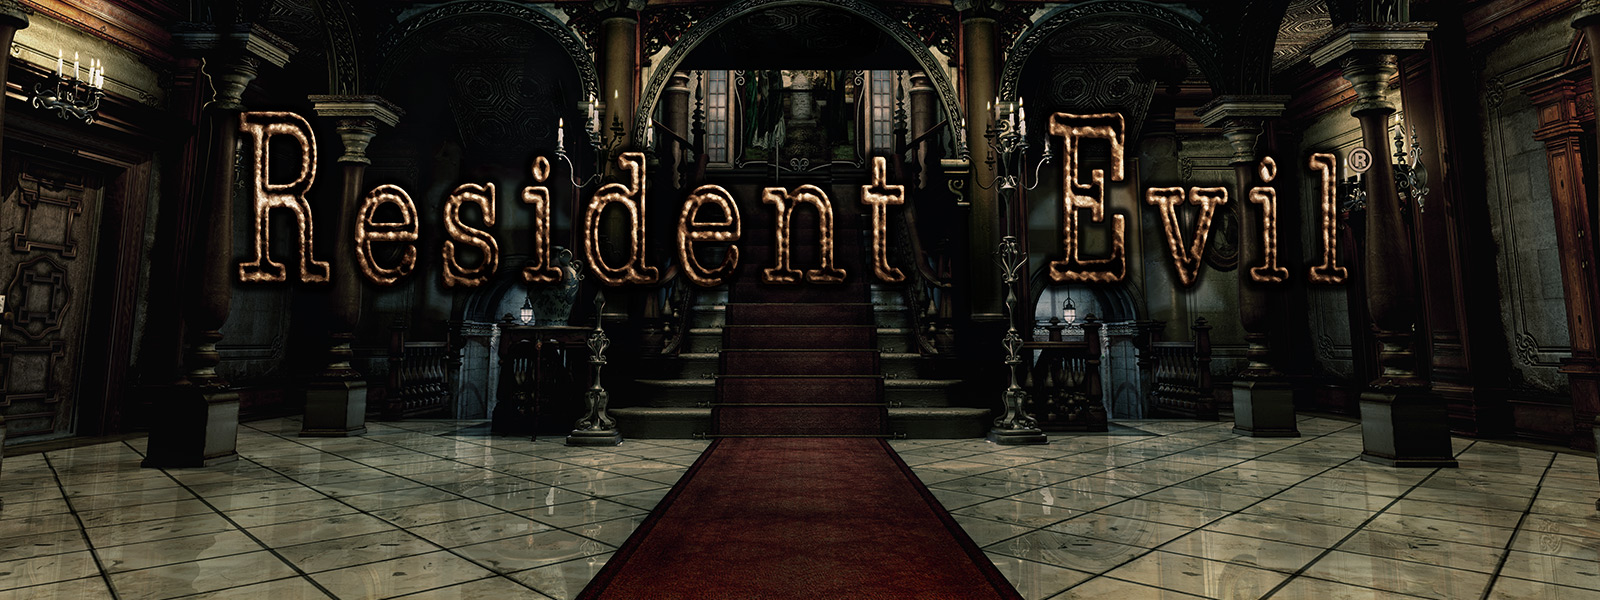 Resident Evil, 레드카펫이 깔린 계단과 대형 아치가 있는 입구 장면